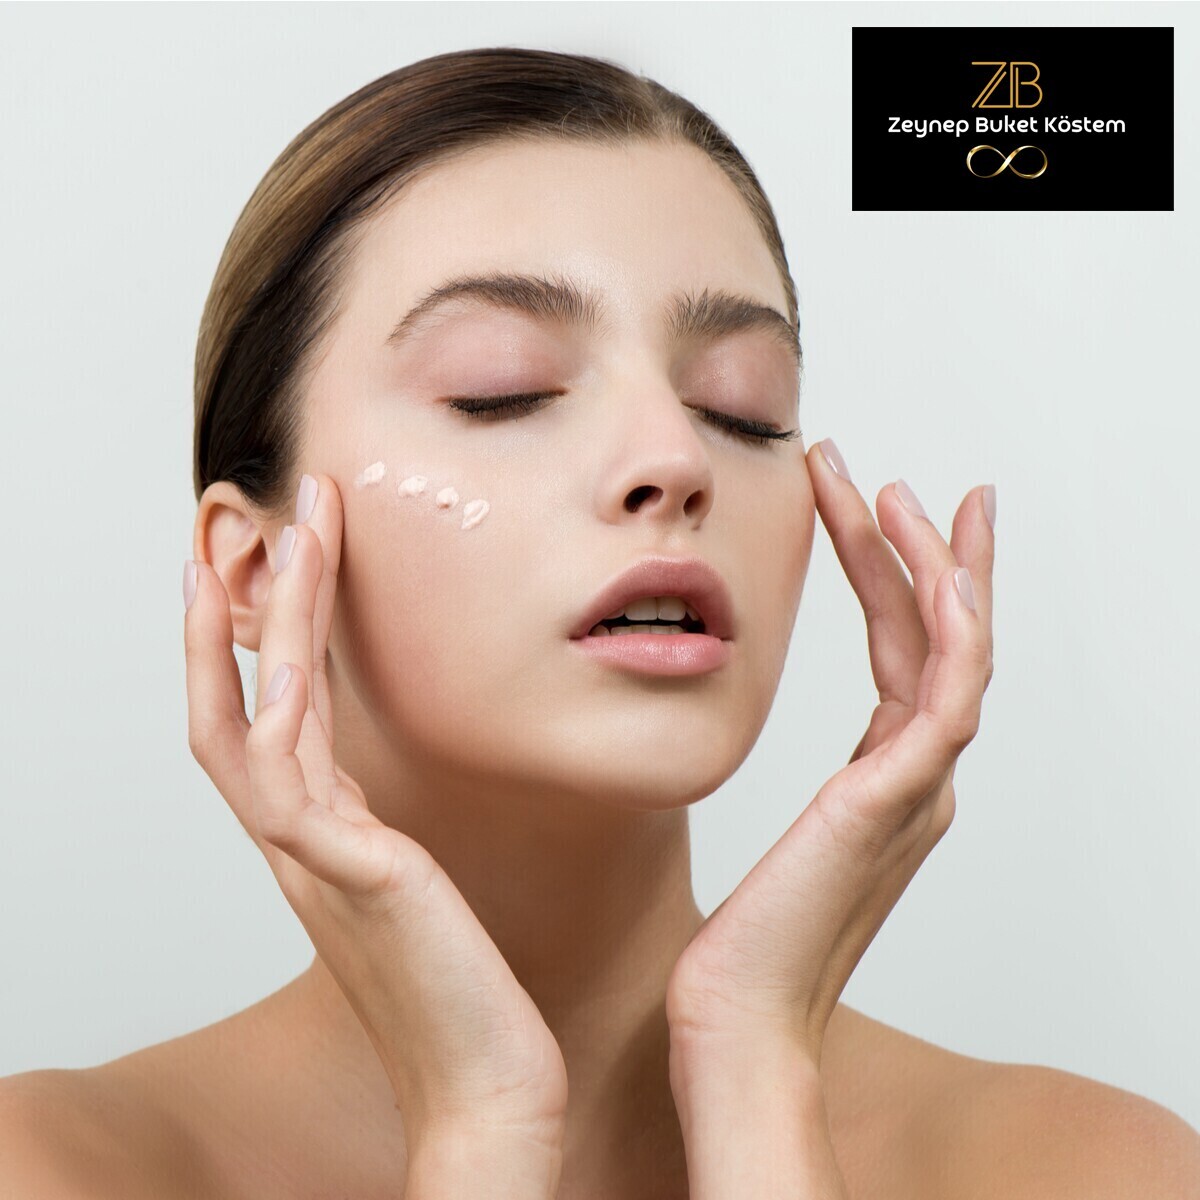 Z&B Beauty Center By Buket Manav'da 1 Seans Cilt Bakımı Uygulaması